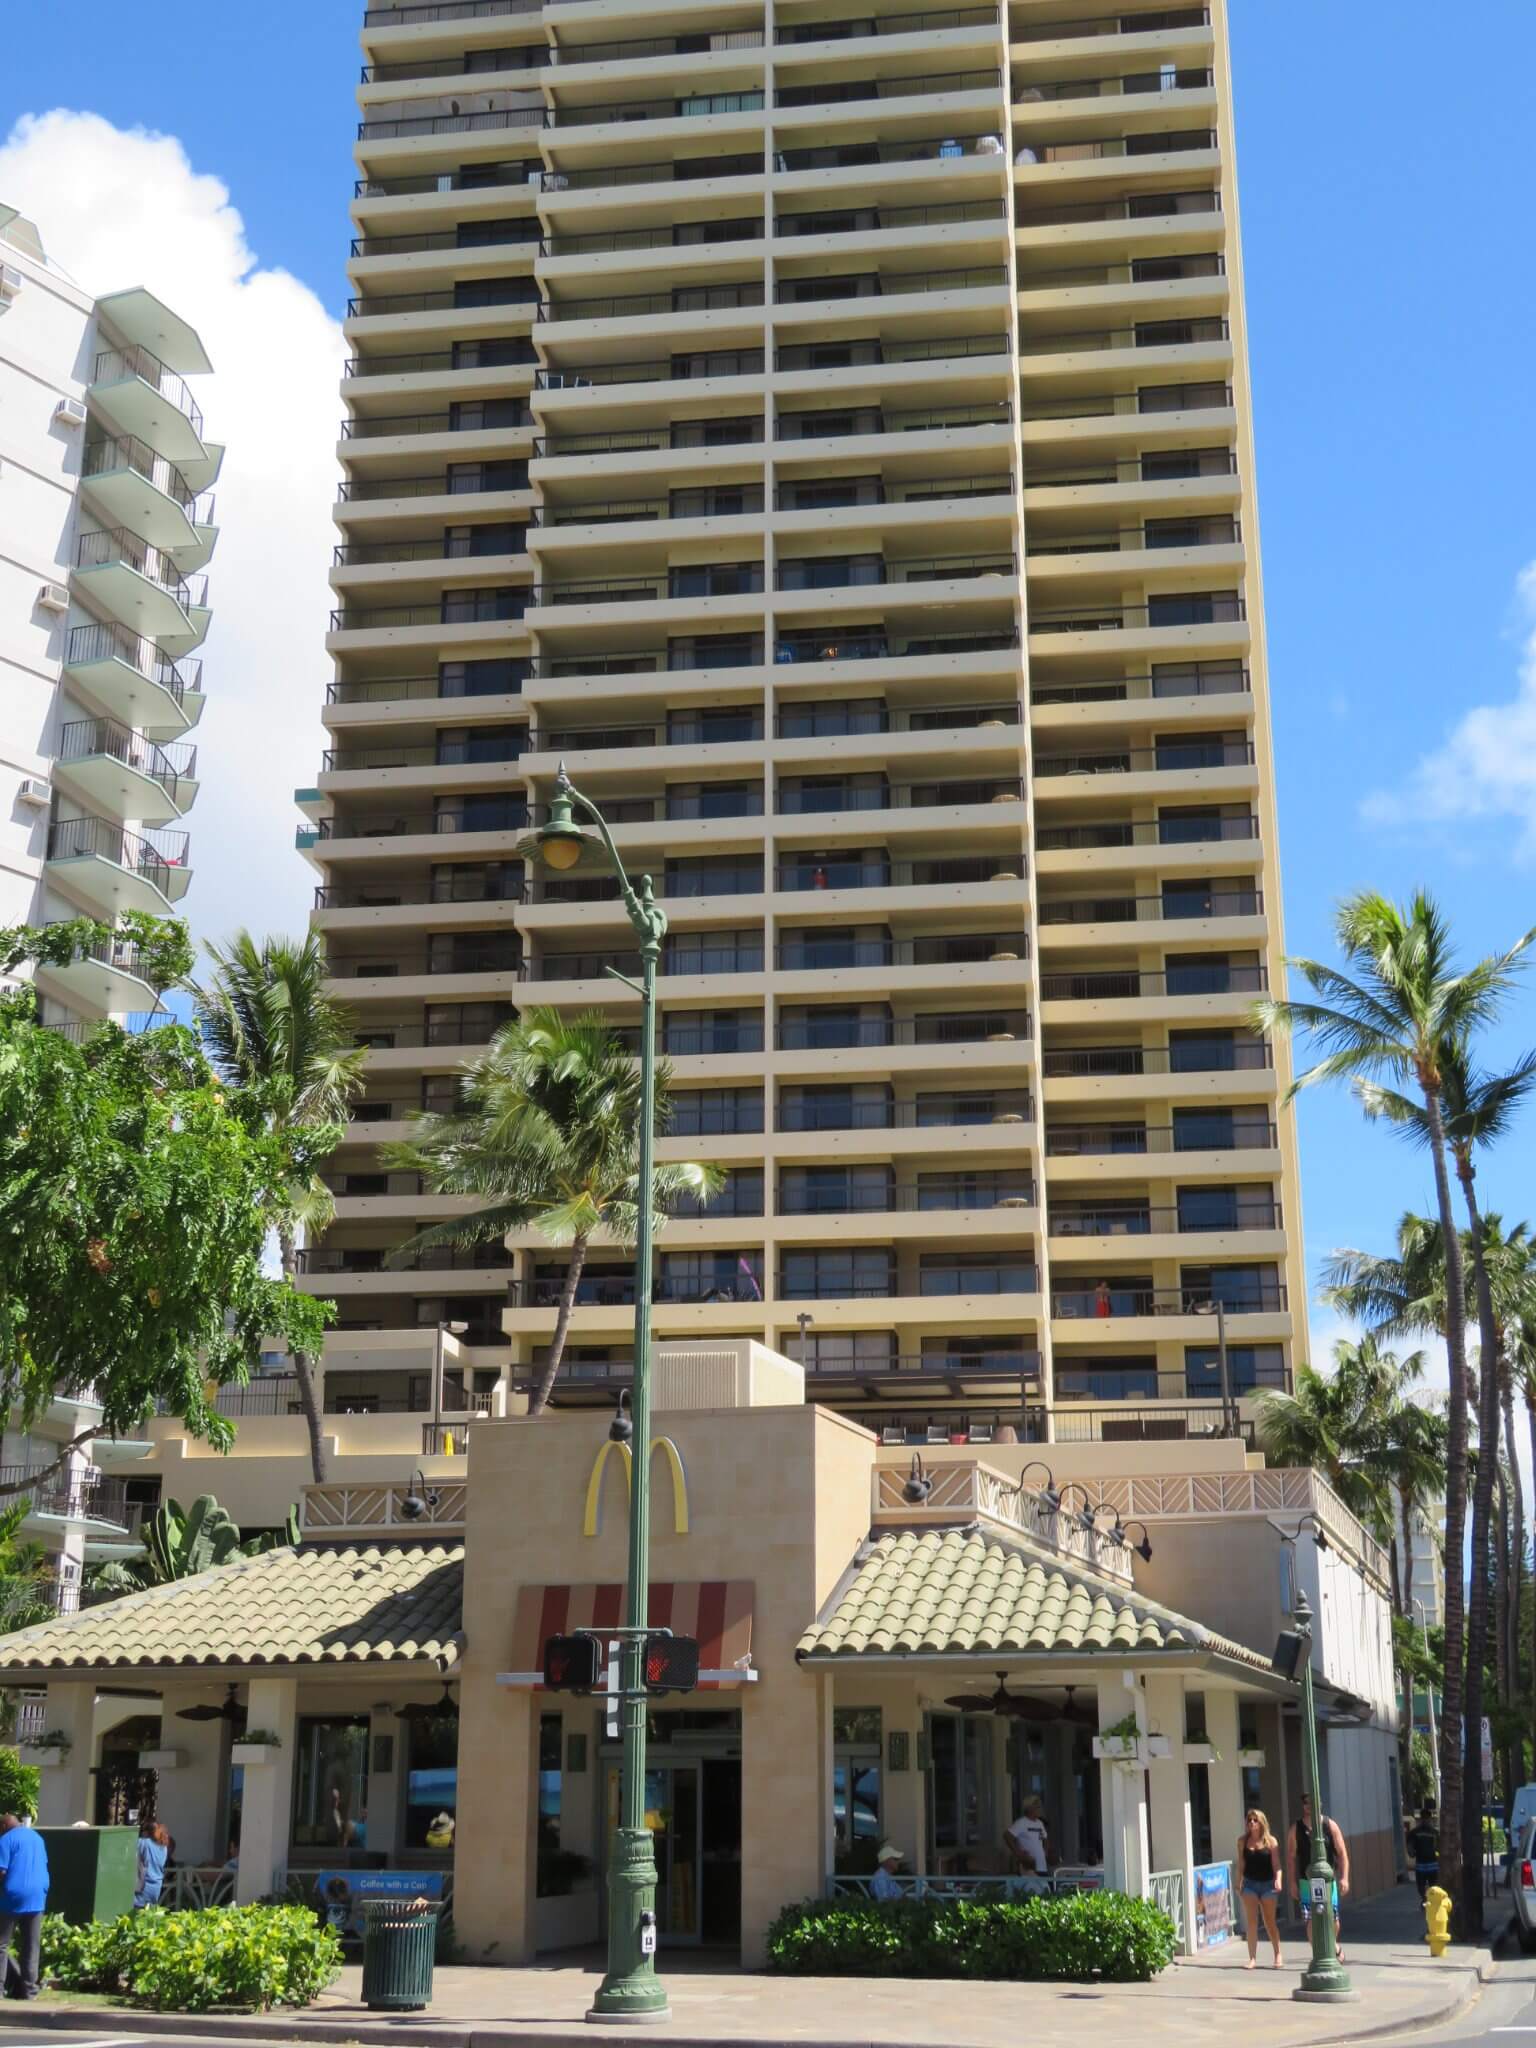 ワイキキ・ビーチ・タワー / Waikiki Beach Tower